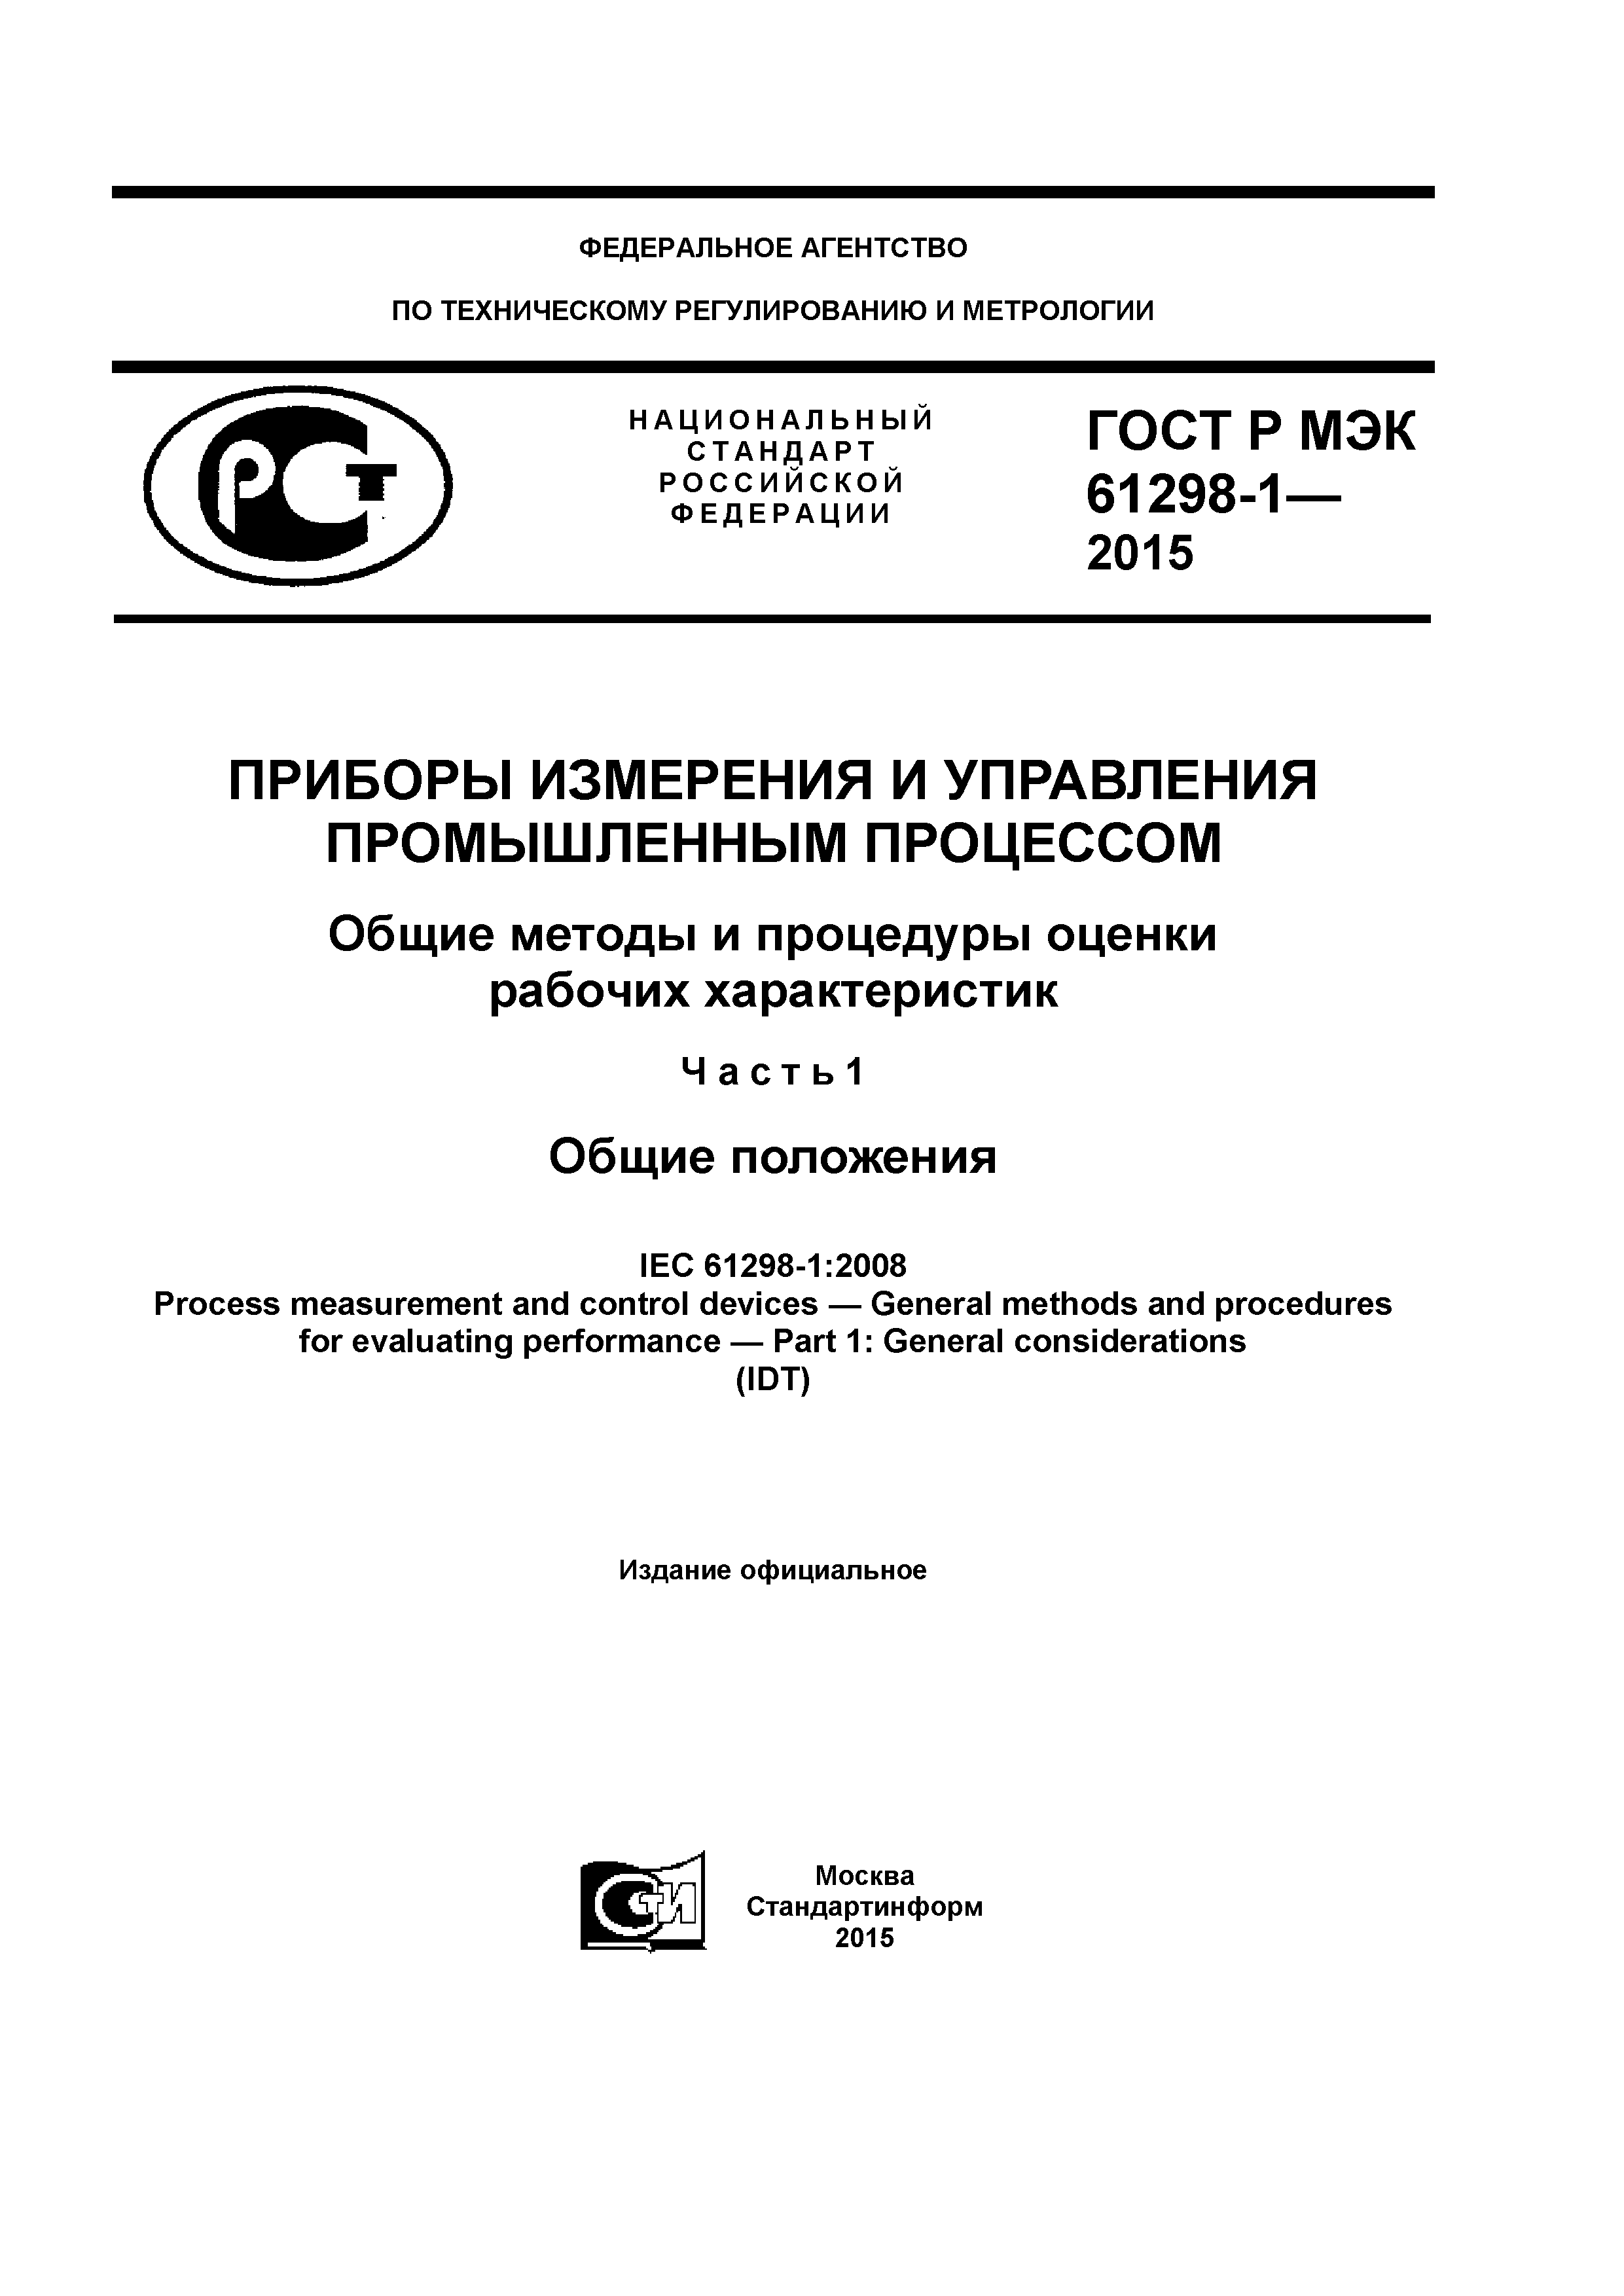 ГОСТ Р МЭК 61298-1-2015